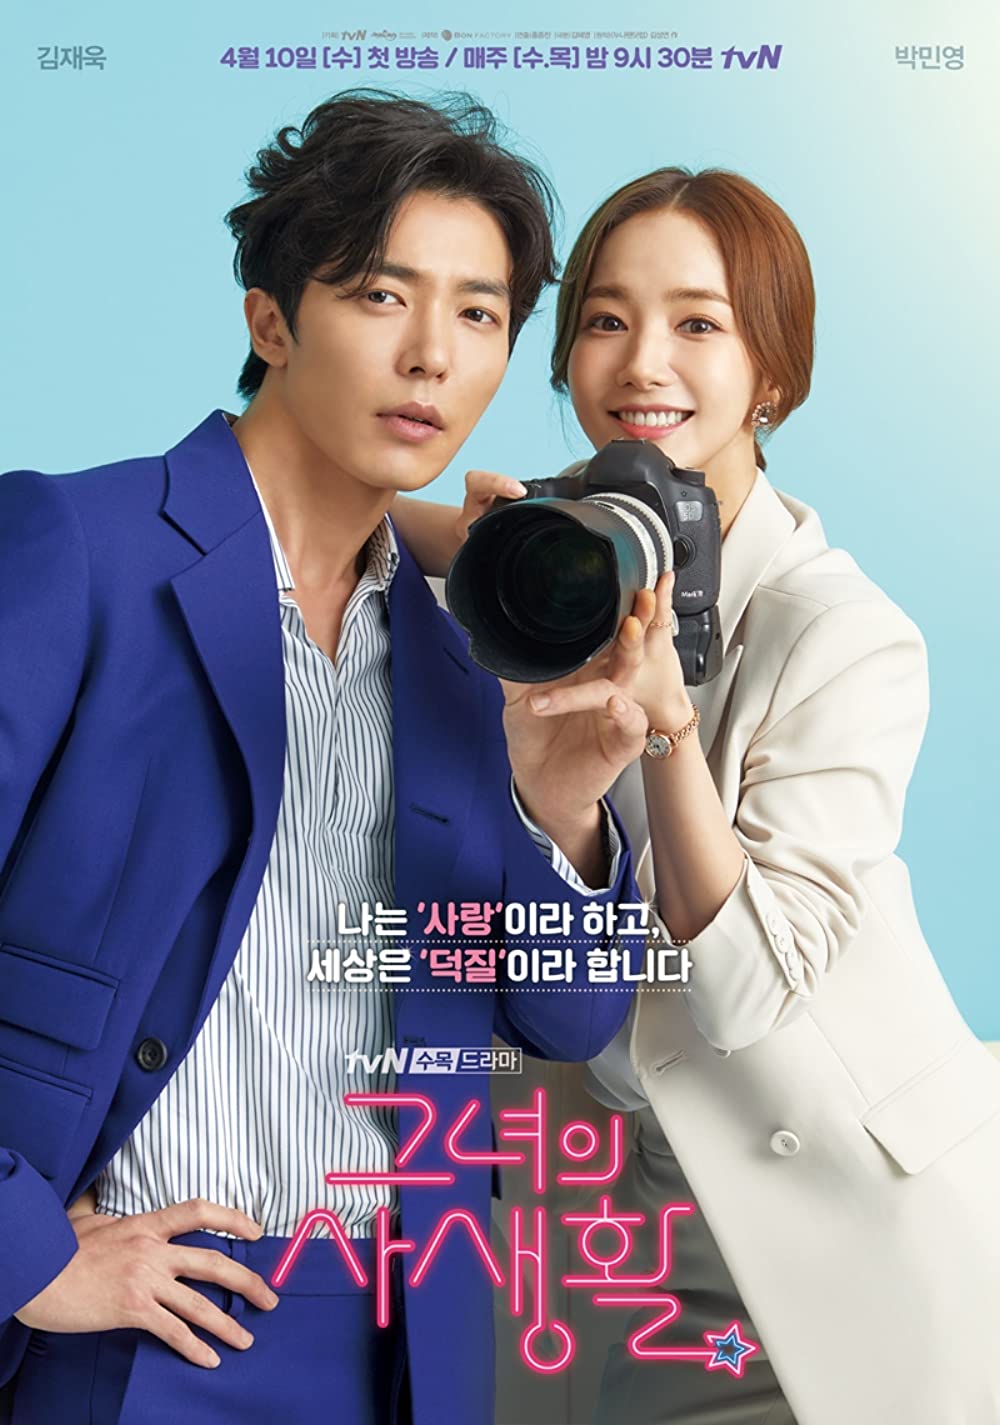 11 Drama Korea terbaik diperankan Kim Jae-wook, comeback di Crazy Love